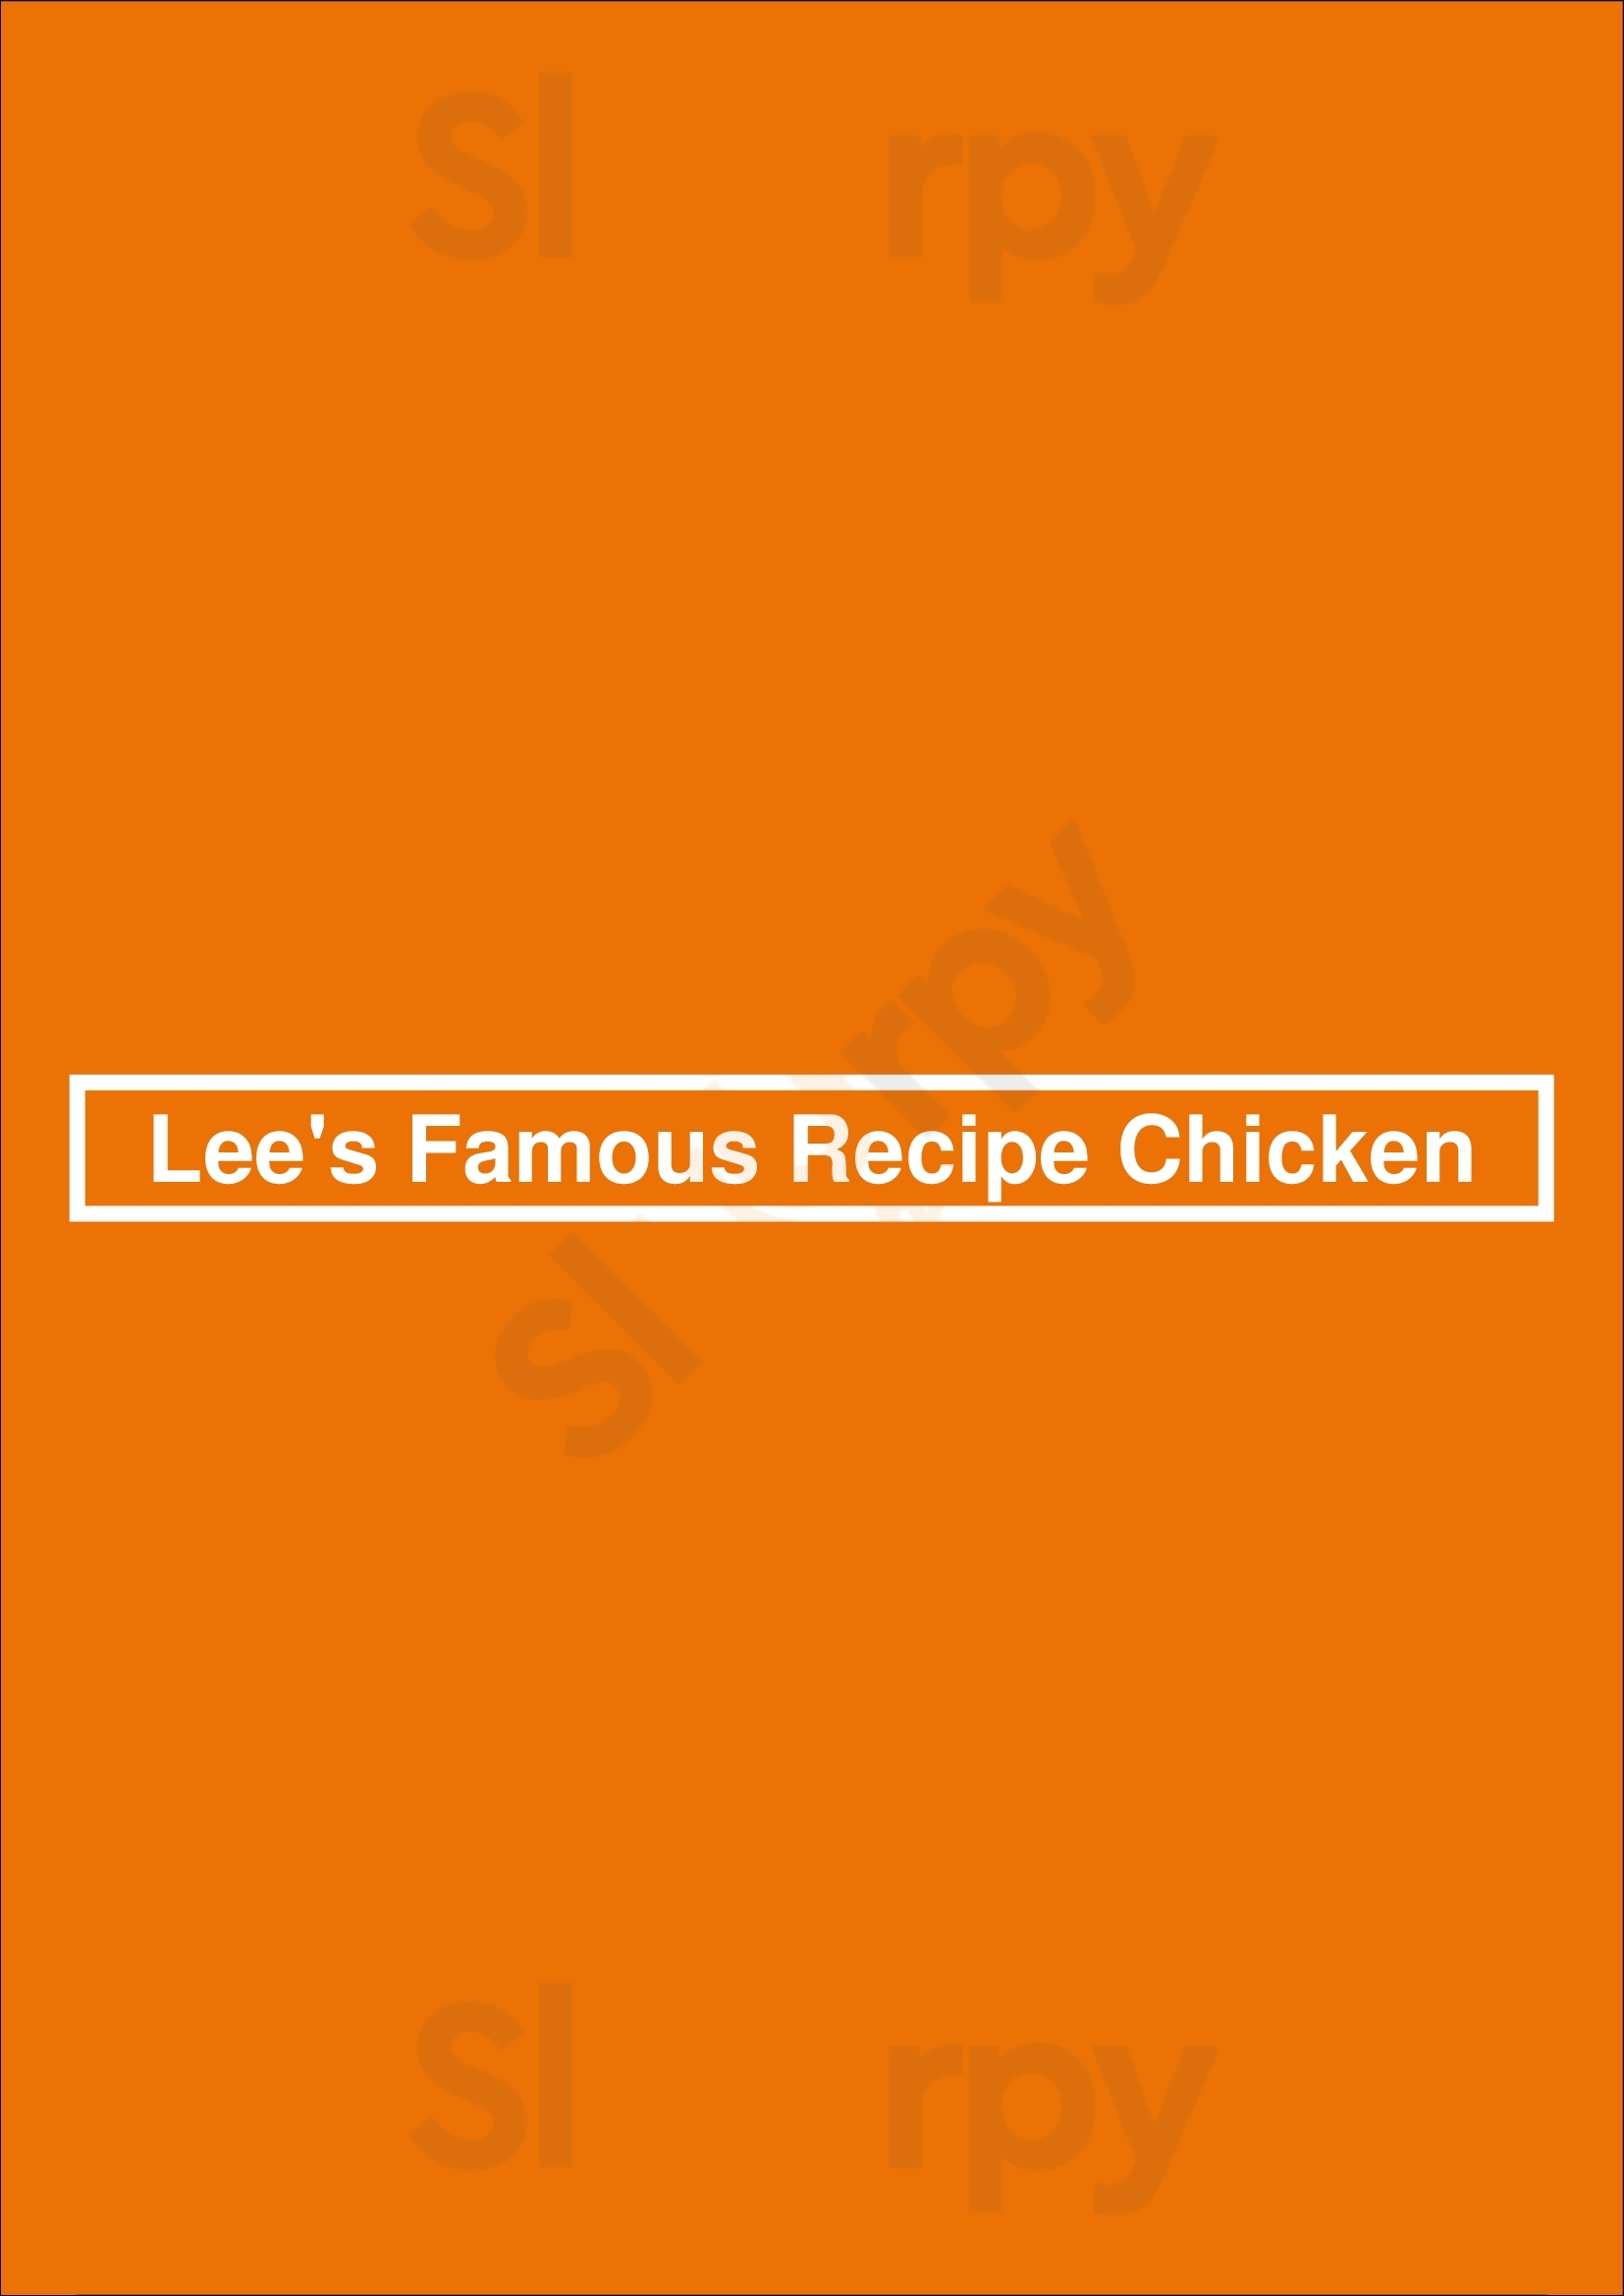 Lee's Famous Recipe Chicken Cincinnati Menu - 1